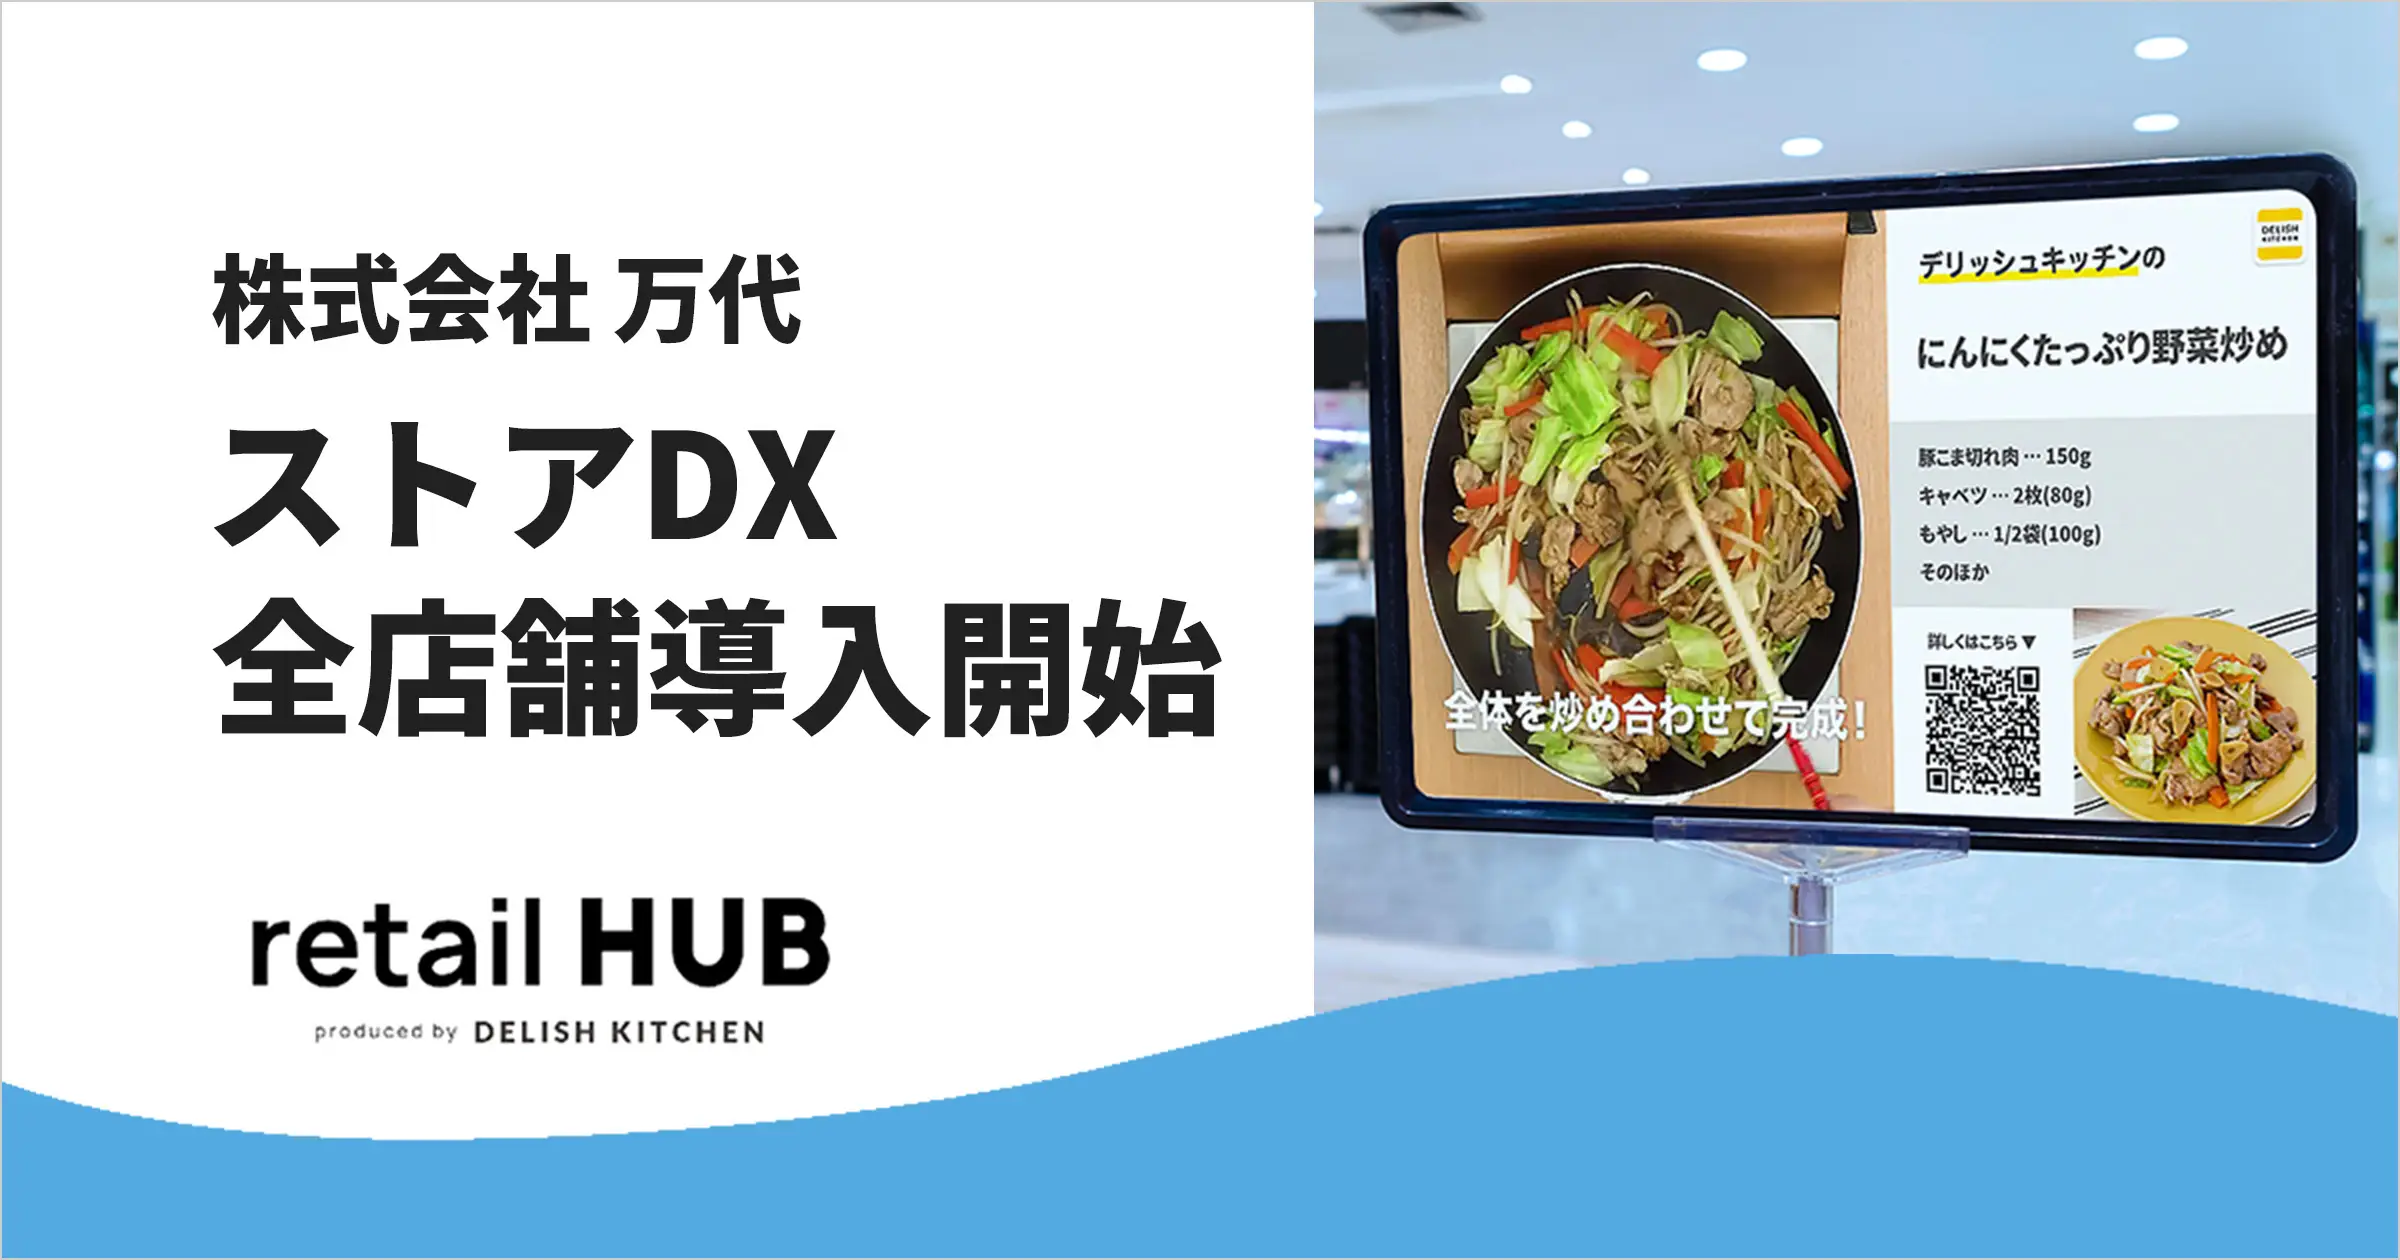 『retail HUB ストアDX』、関西大手スーパー『万代』の全167店舗に店頭サイネージを導入